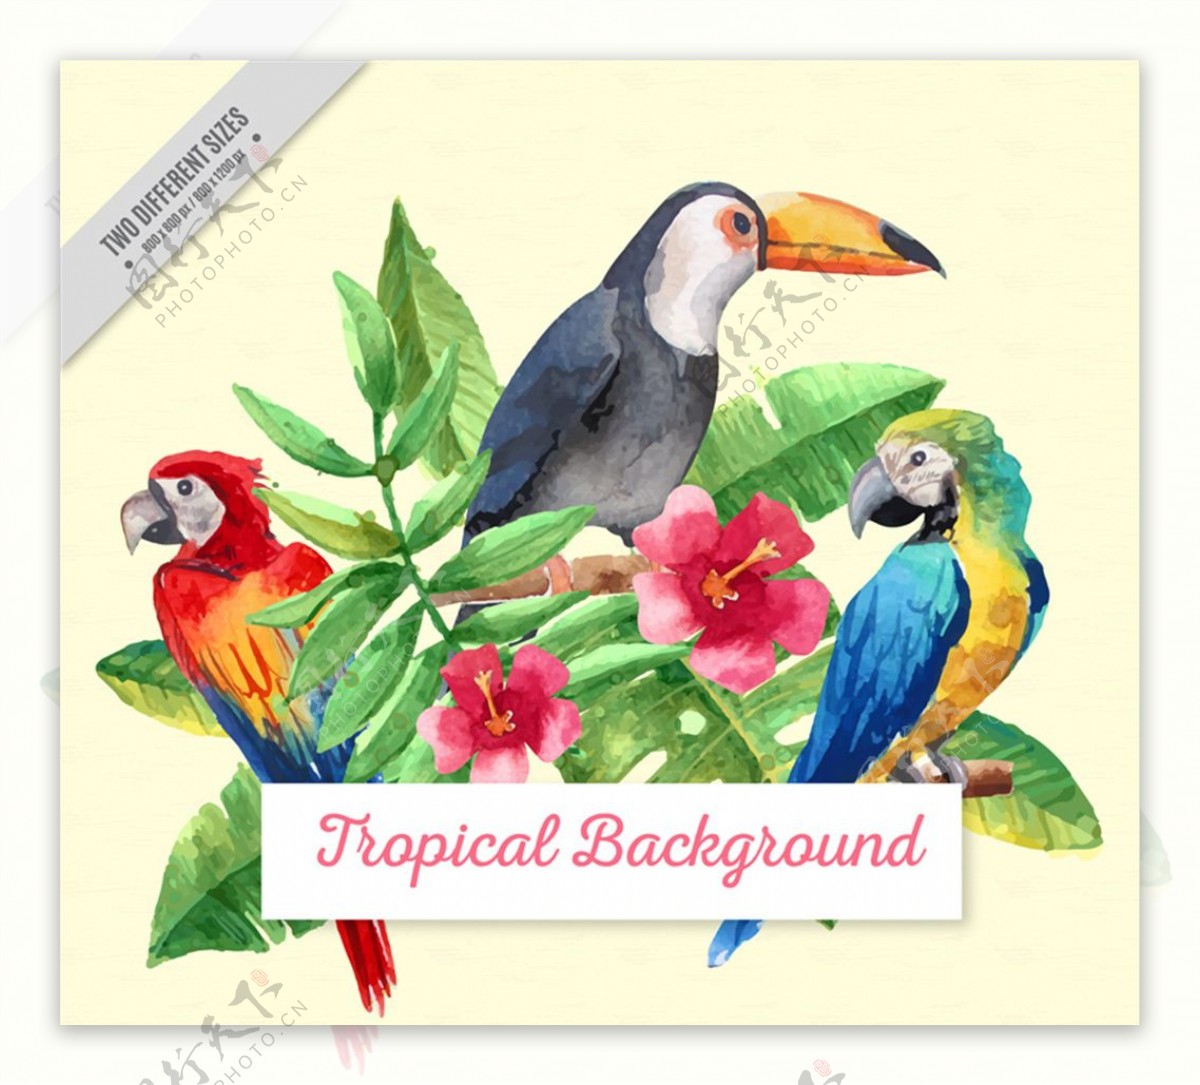 水彩绘热带鸟类和朱槿矢量图